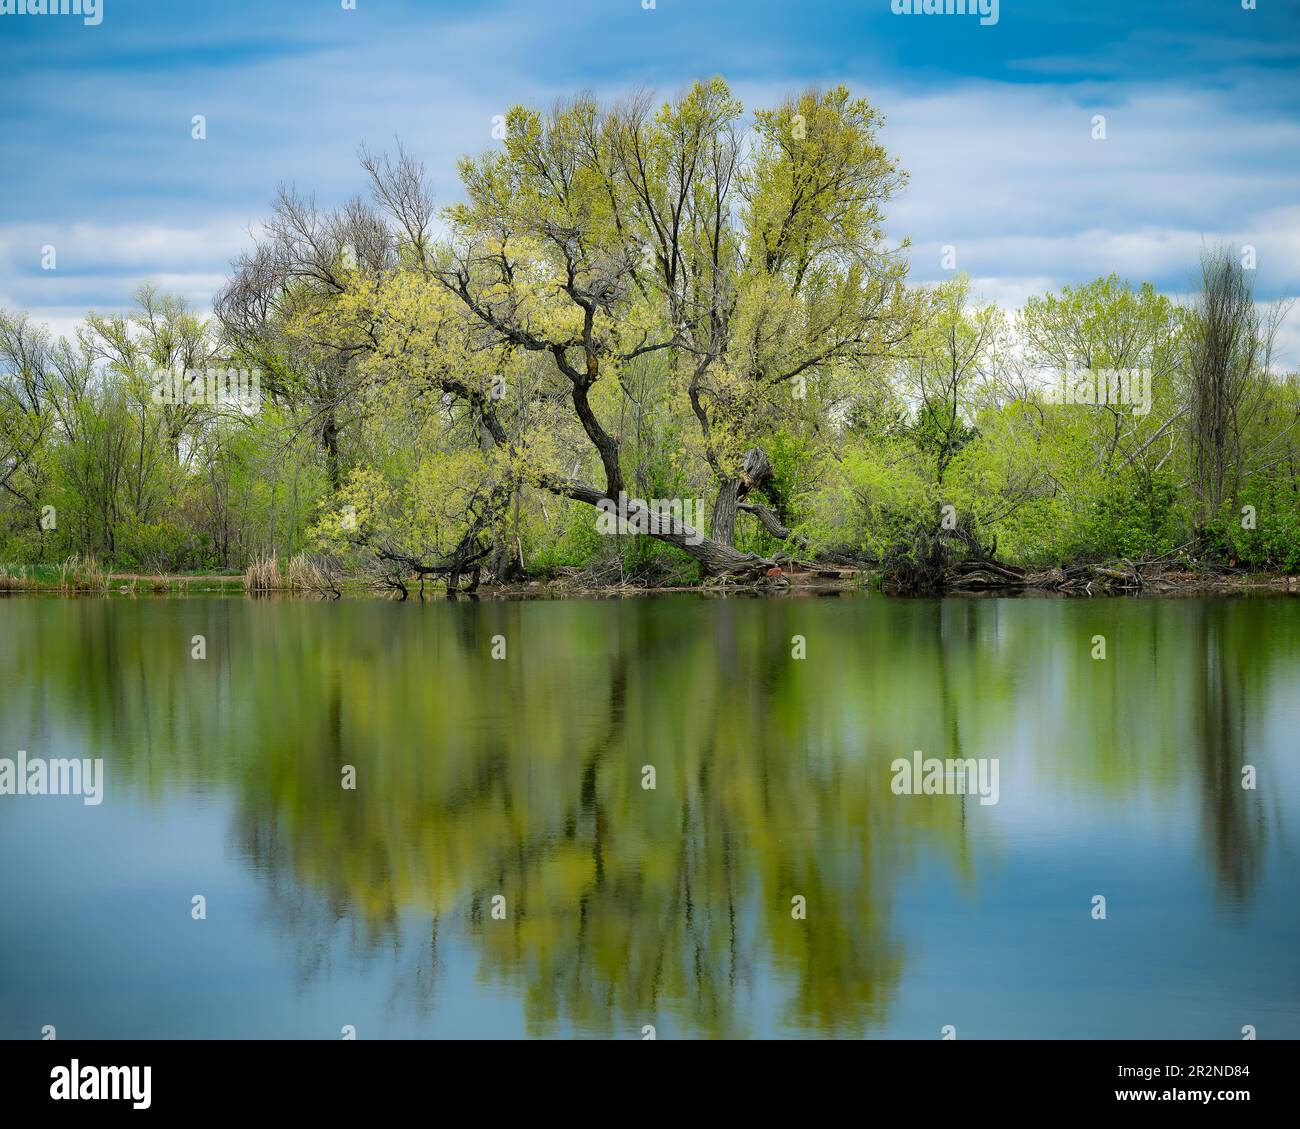 Die Reflexion von Bäumen mit grünen Blättern auf der ruhigen spiegelähnlichen Oberfläche eines Sees mit Wolken oder lila Bergen Stockfoto